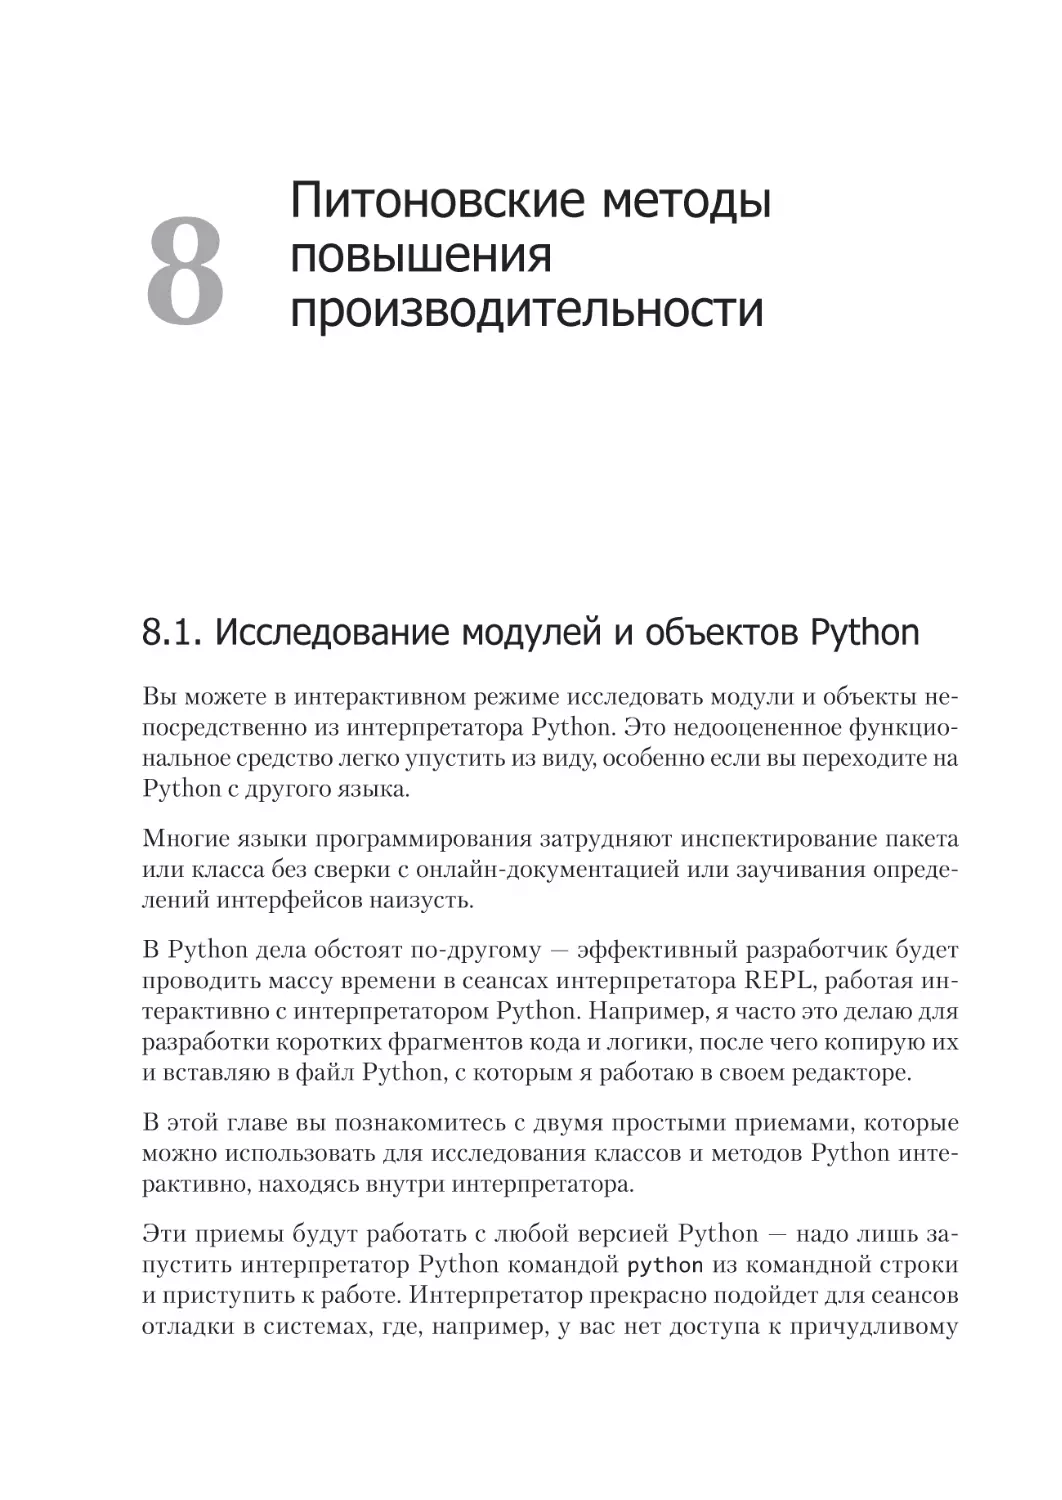 Глава 8. Питоновские методы 
повышения производительности
8.1. Исследование модулей и объектов Python